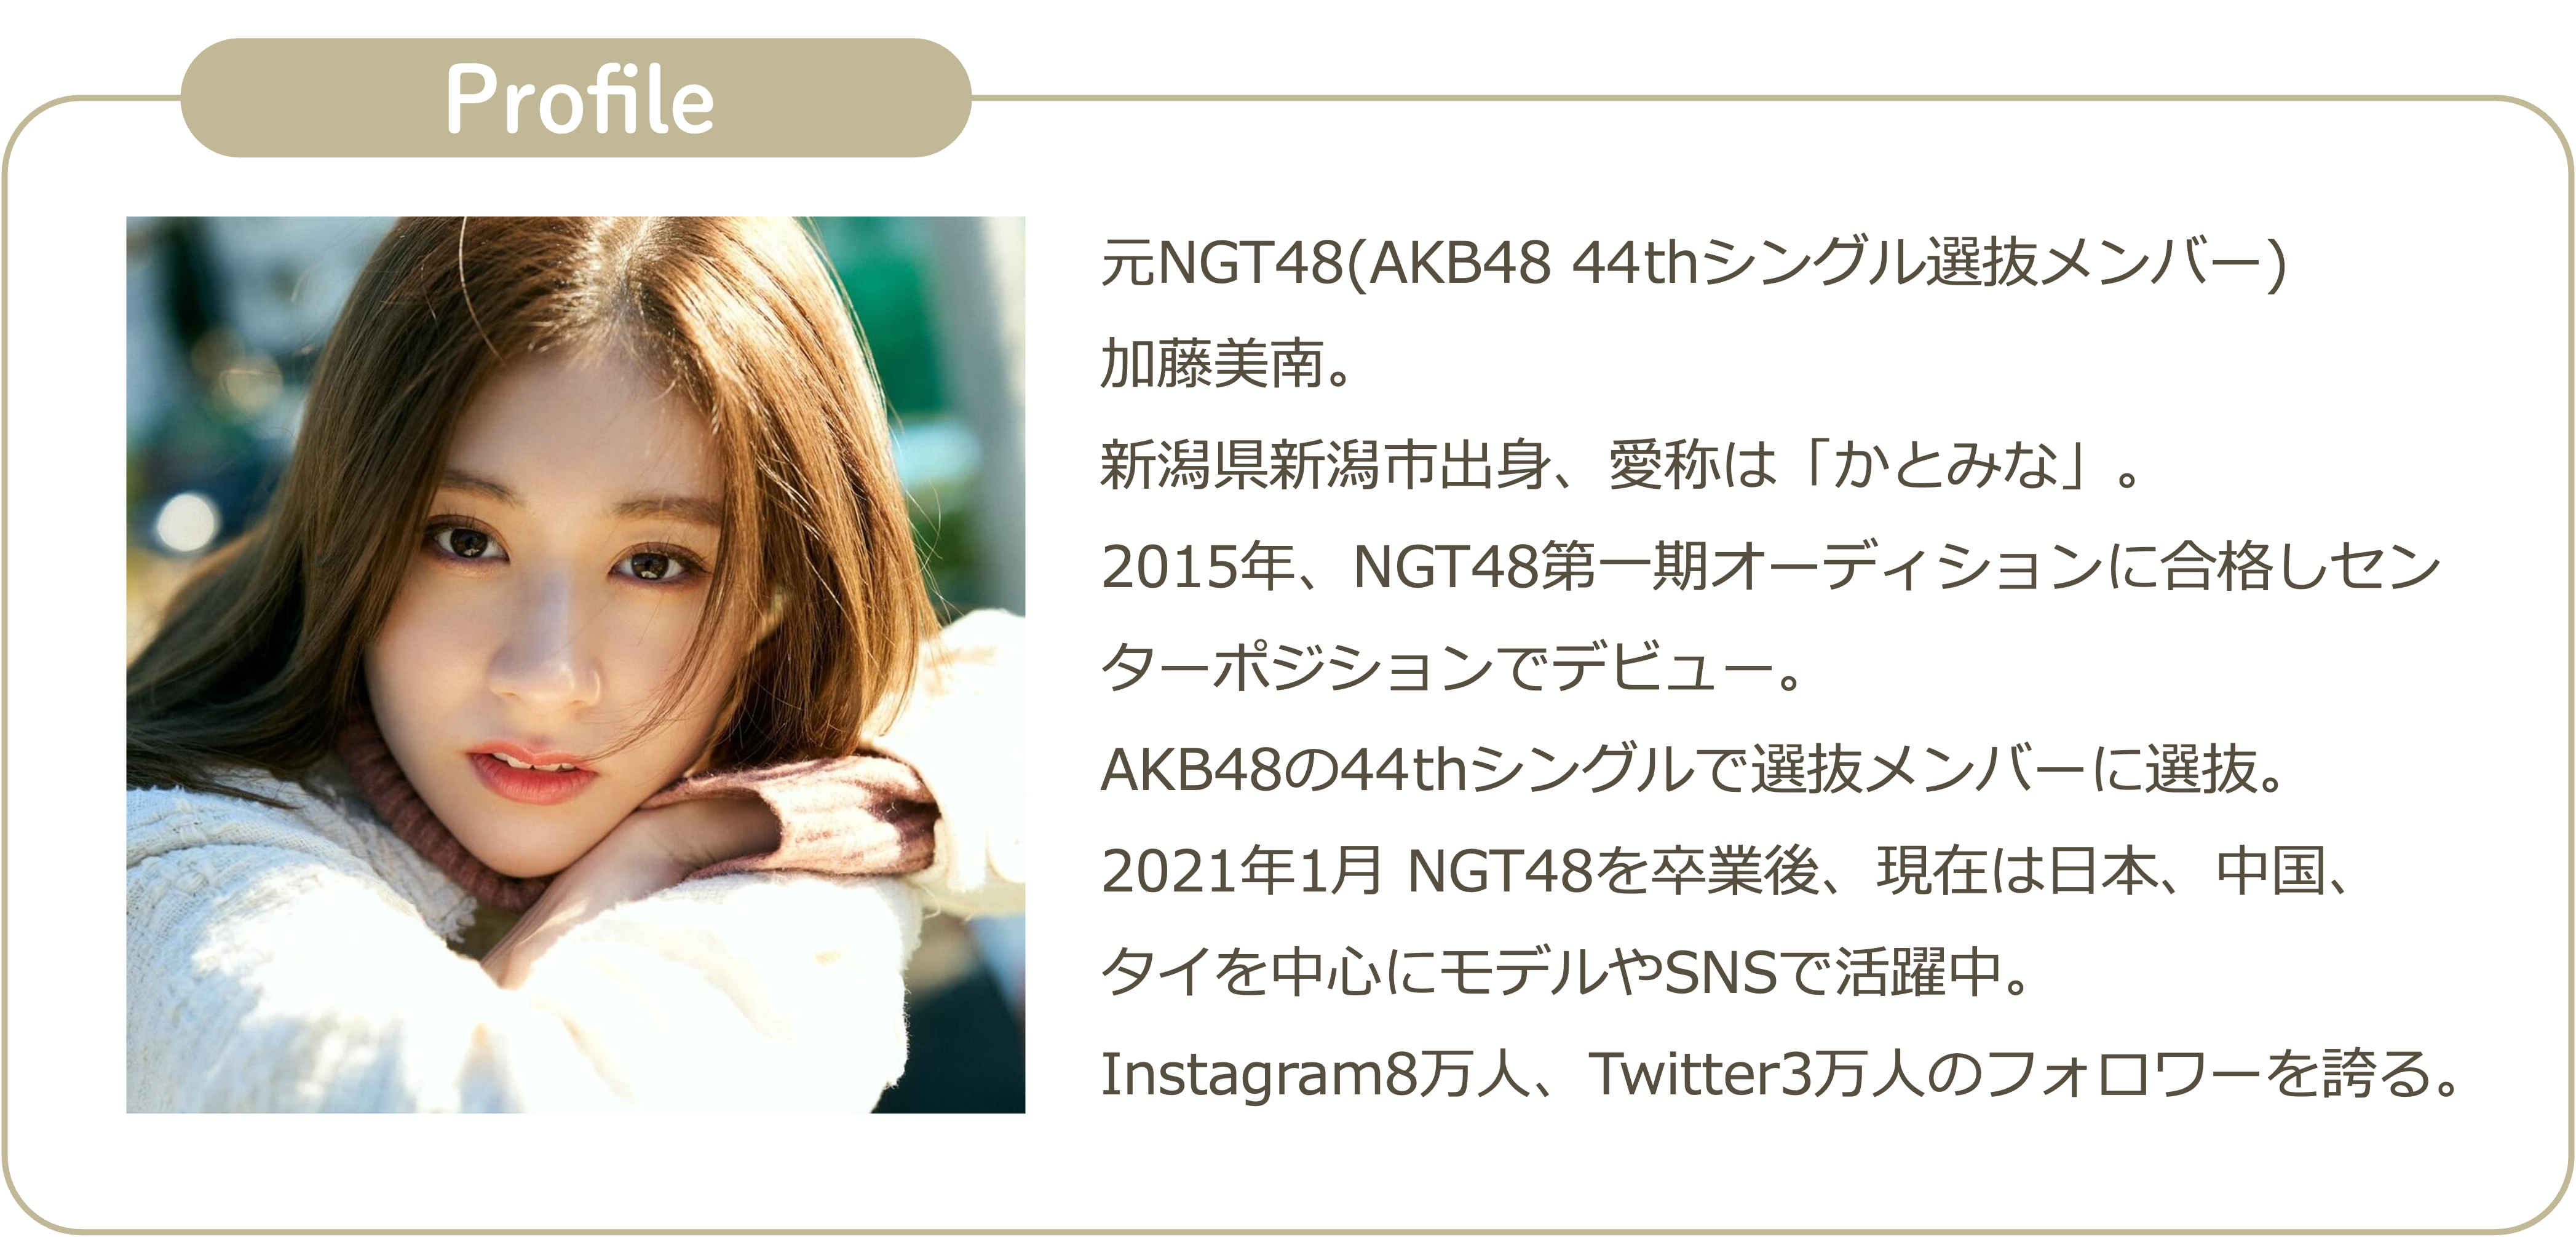 イベントレポート 元ngt48加藤美南さんイメージキャラクター発表会 Gensekiマガジン 仕事と創作に役立つデザインメディア